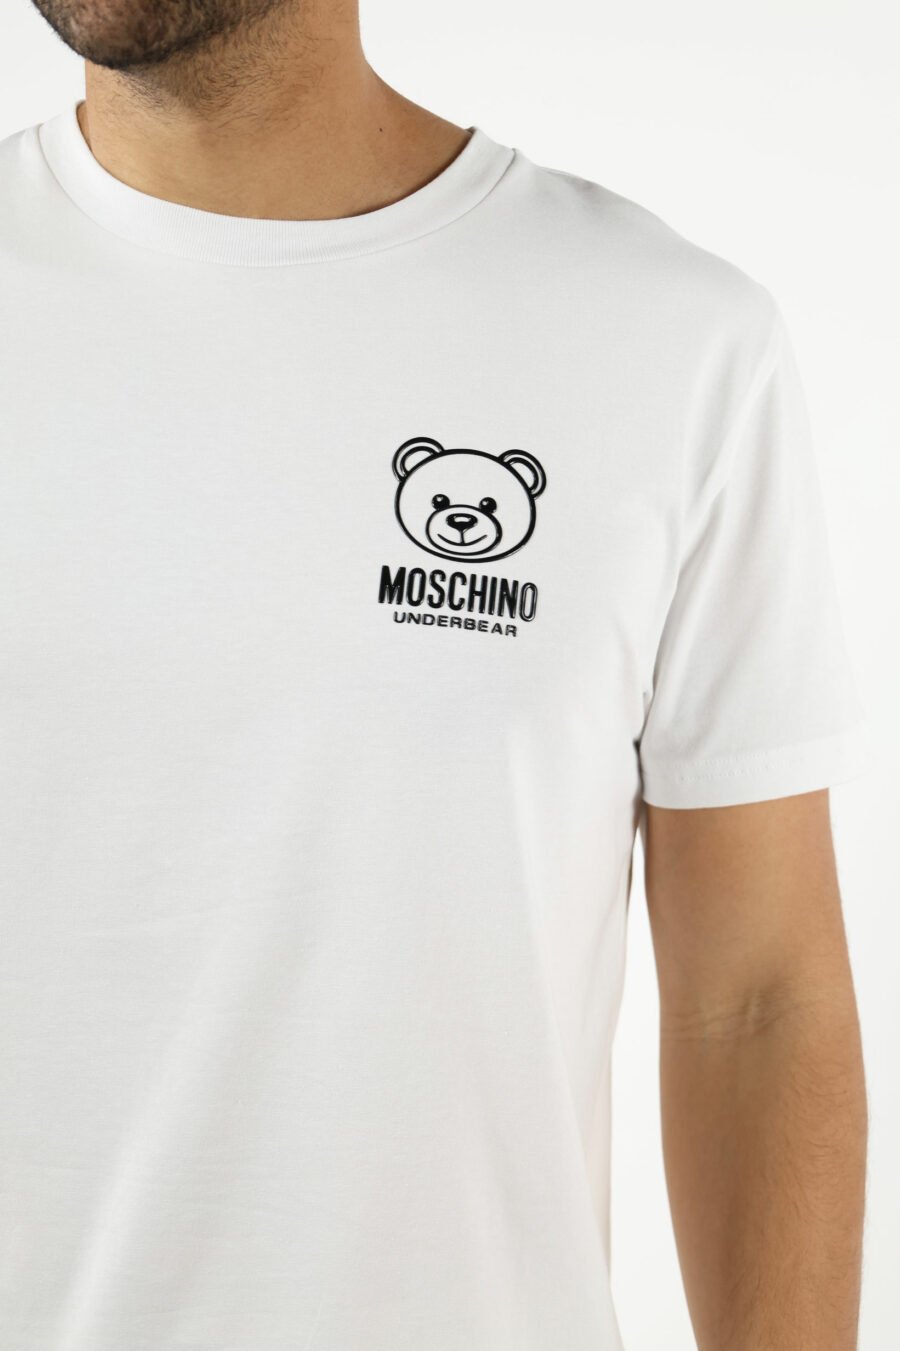 Camiseta blanca con minilogo oso "underbear" en goma negro - 111031